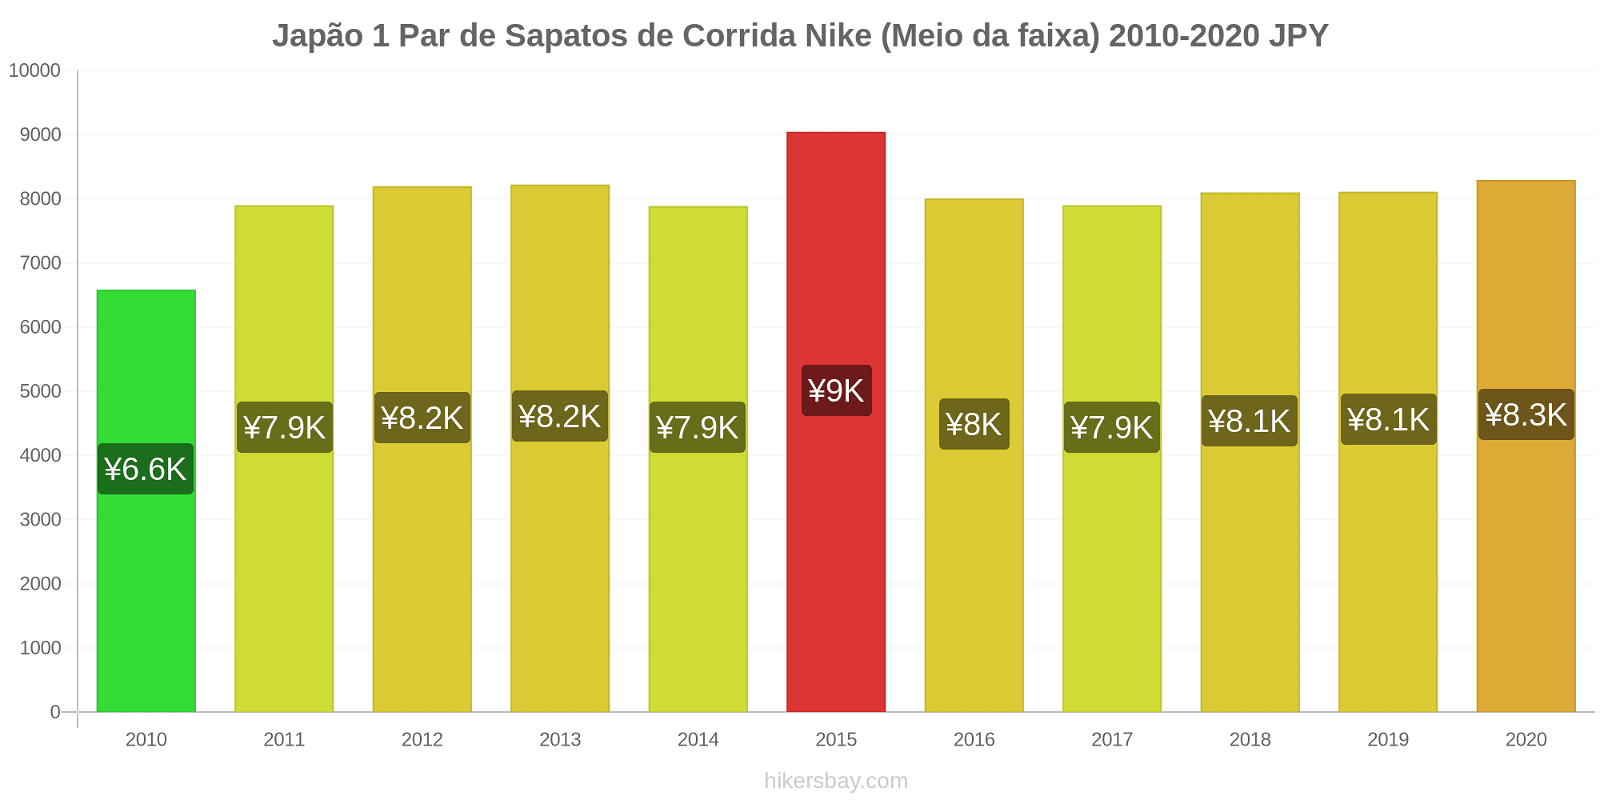 Japão variação de preço 1 par de tênis Nike (mid-range) hikersbay.com